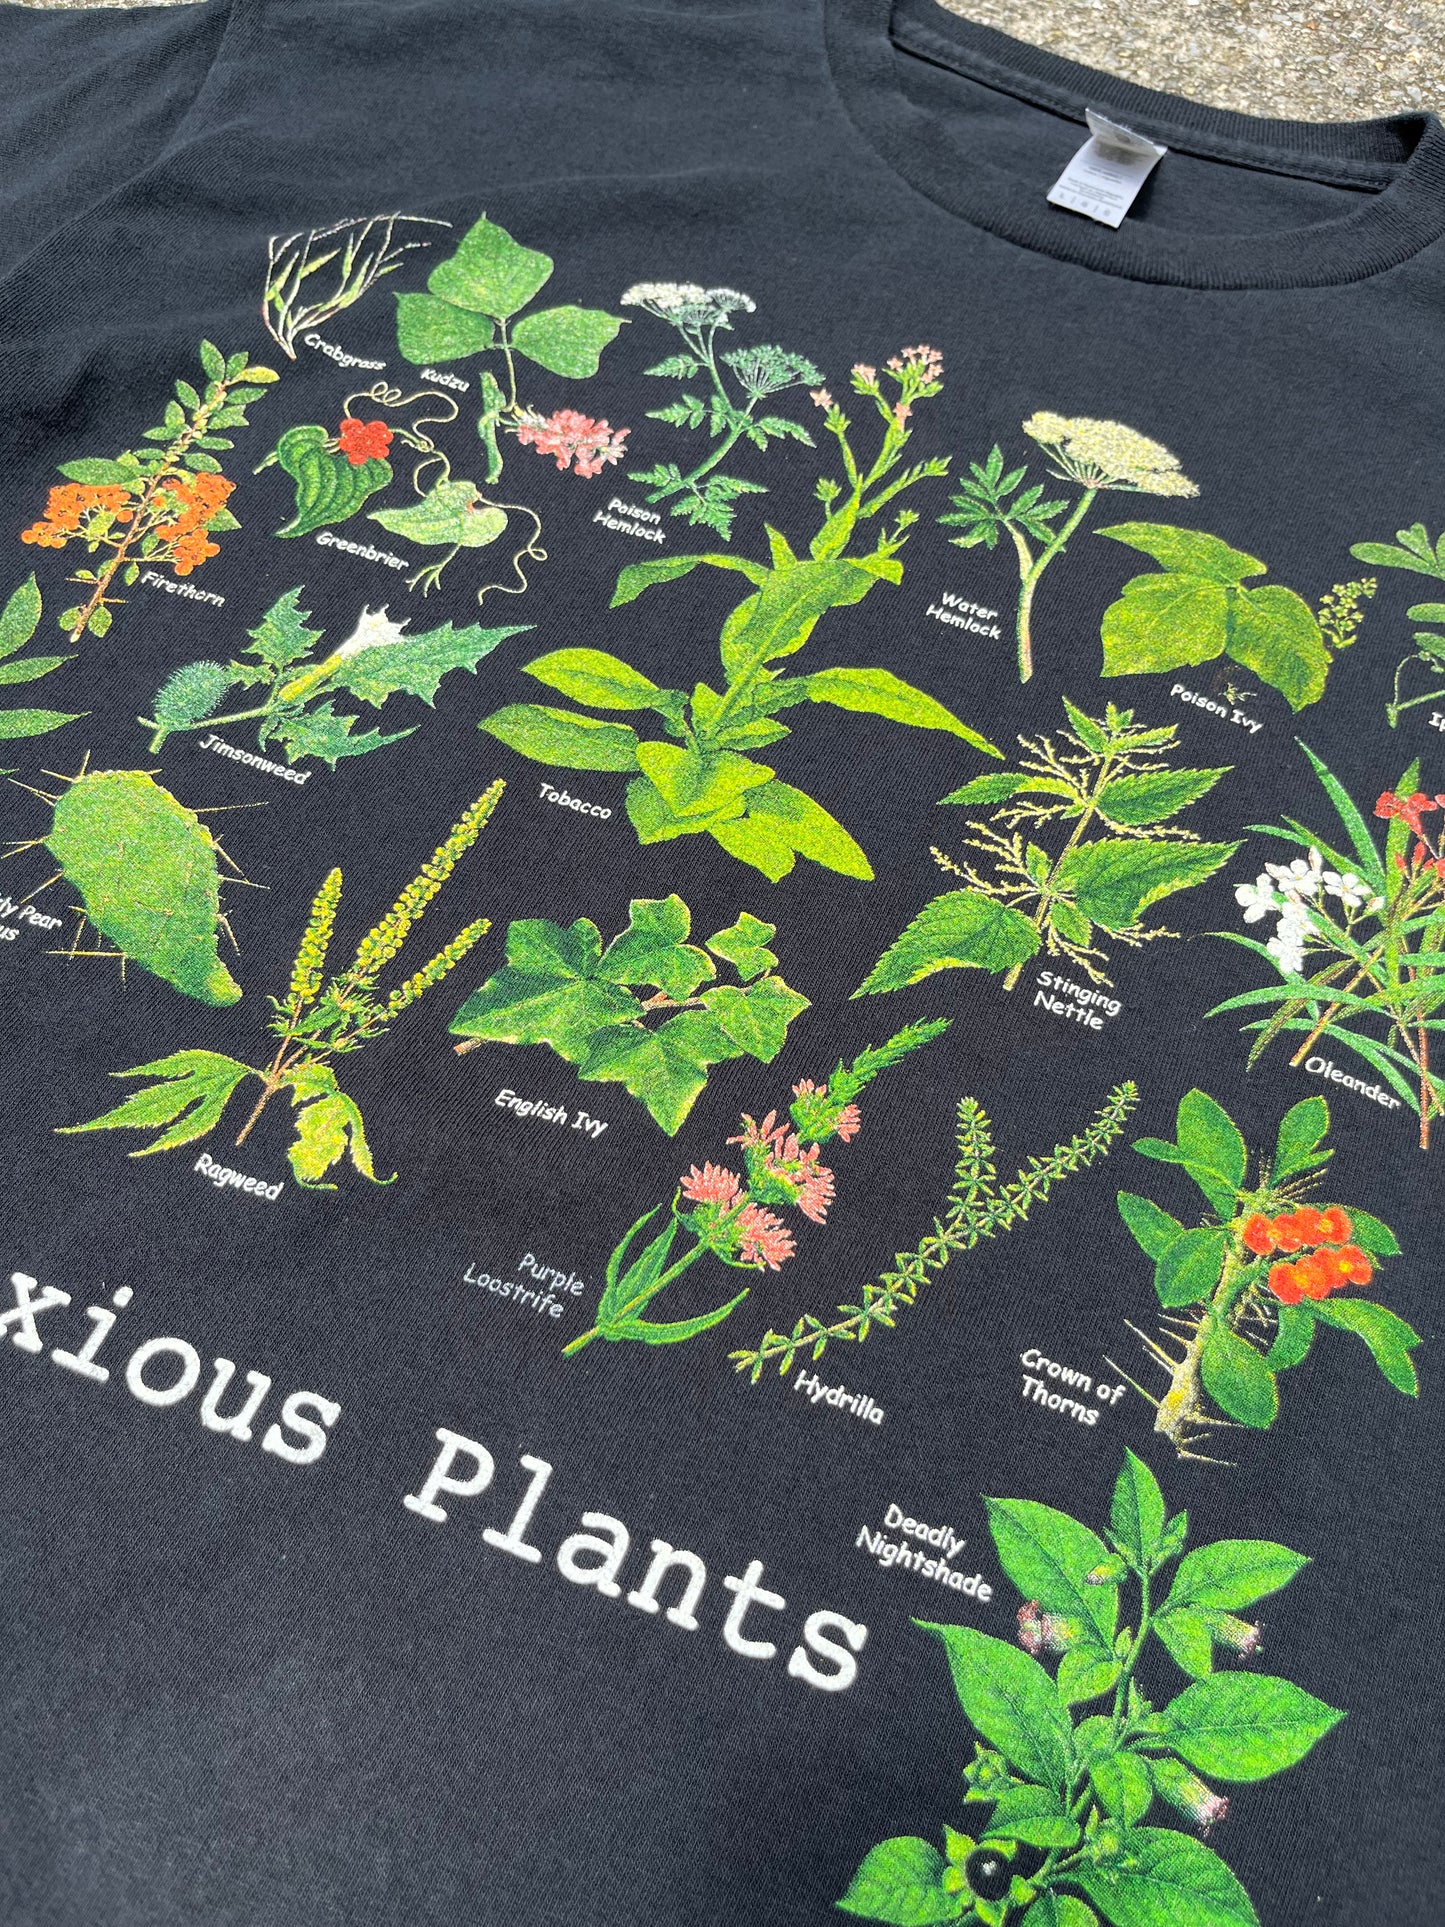 OBNOXIOUS PLANTS